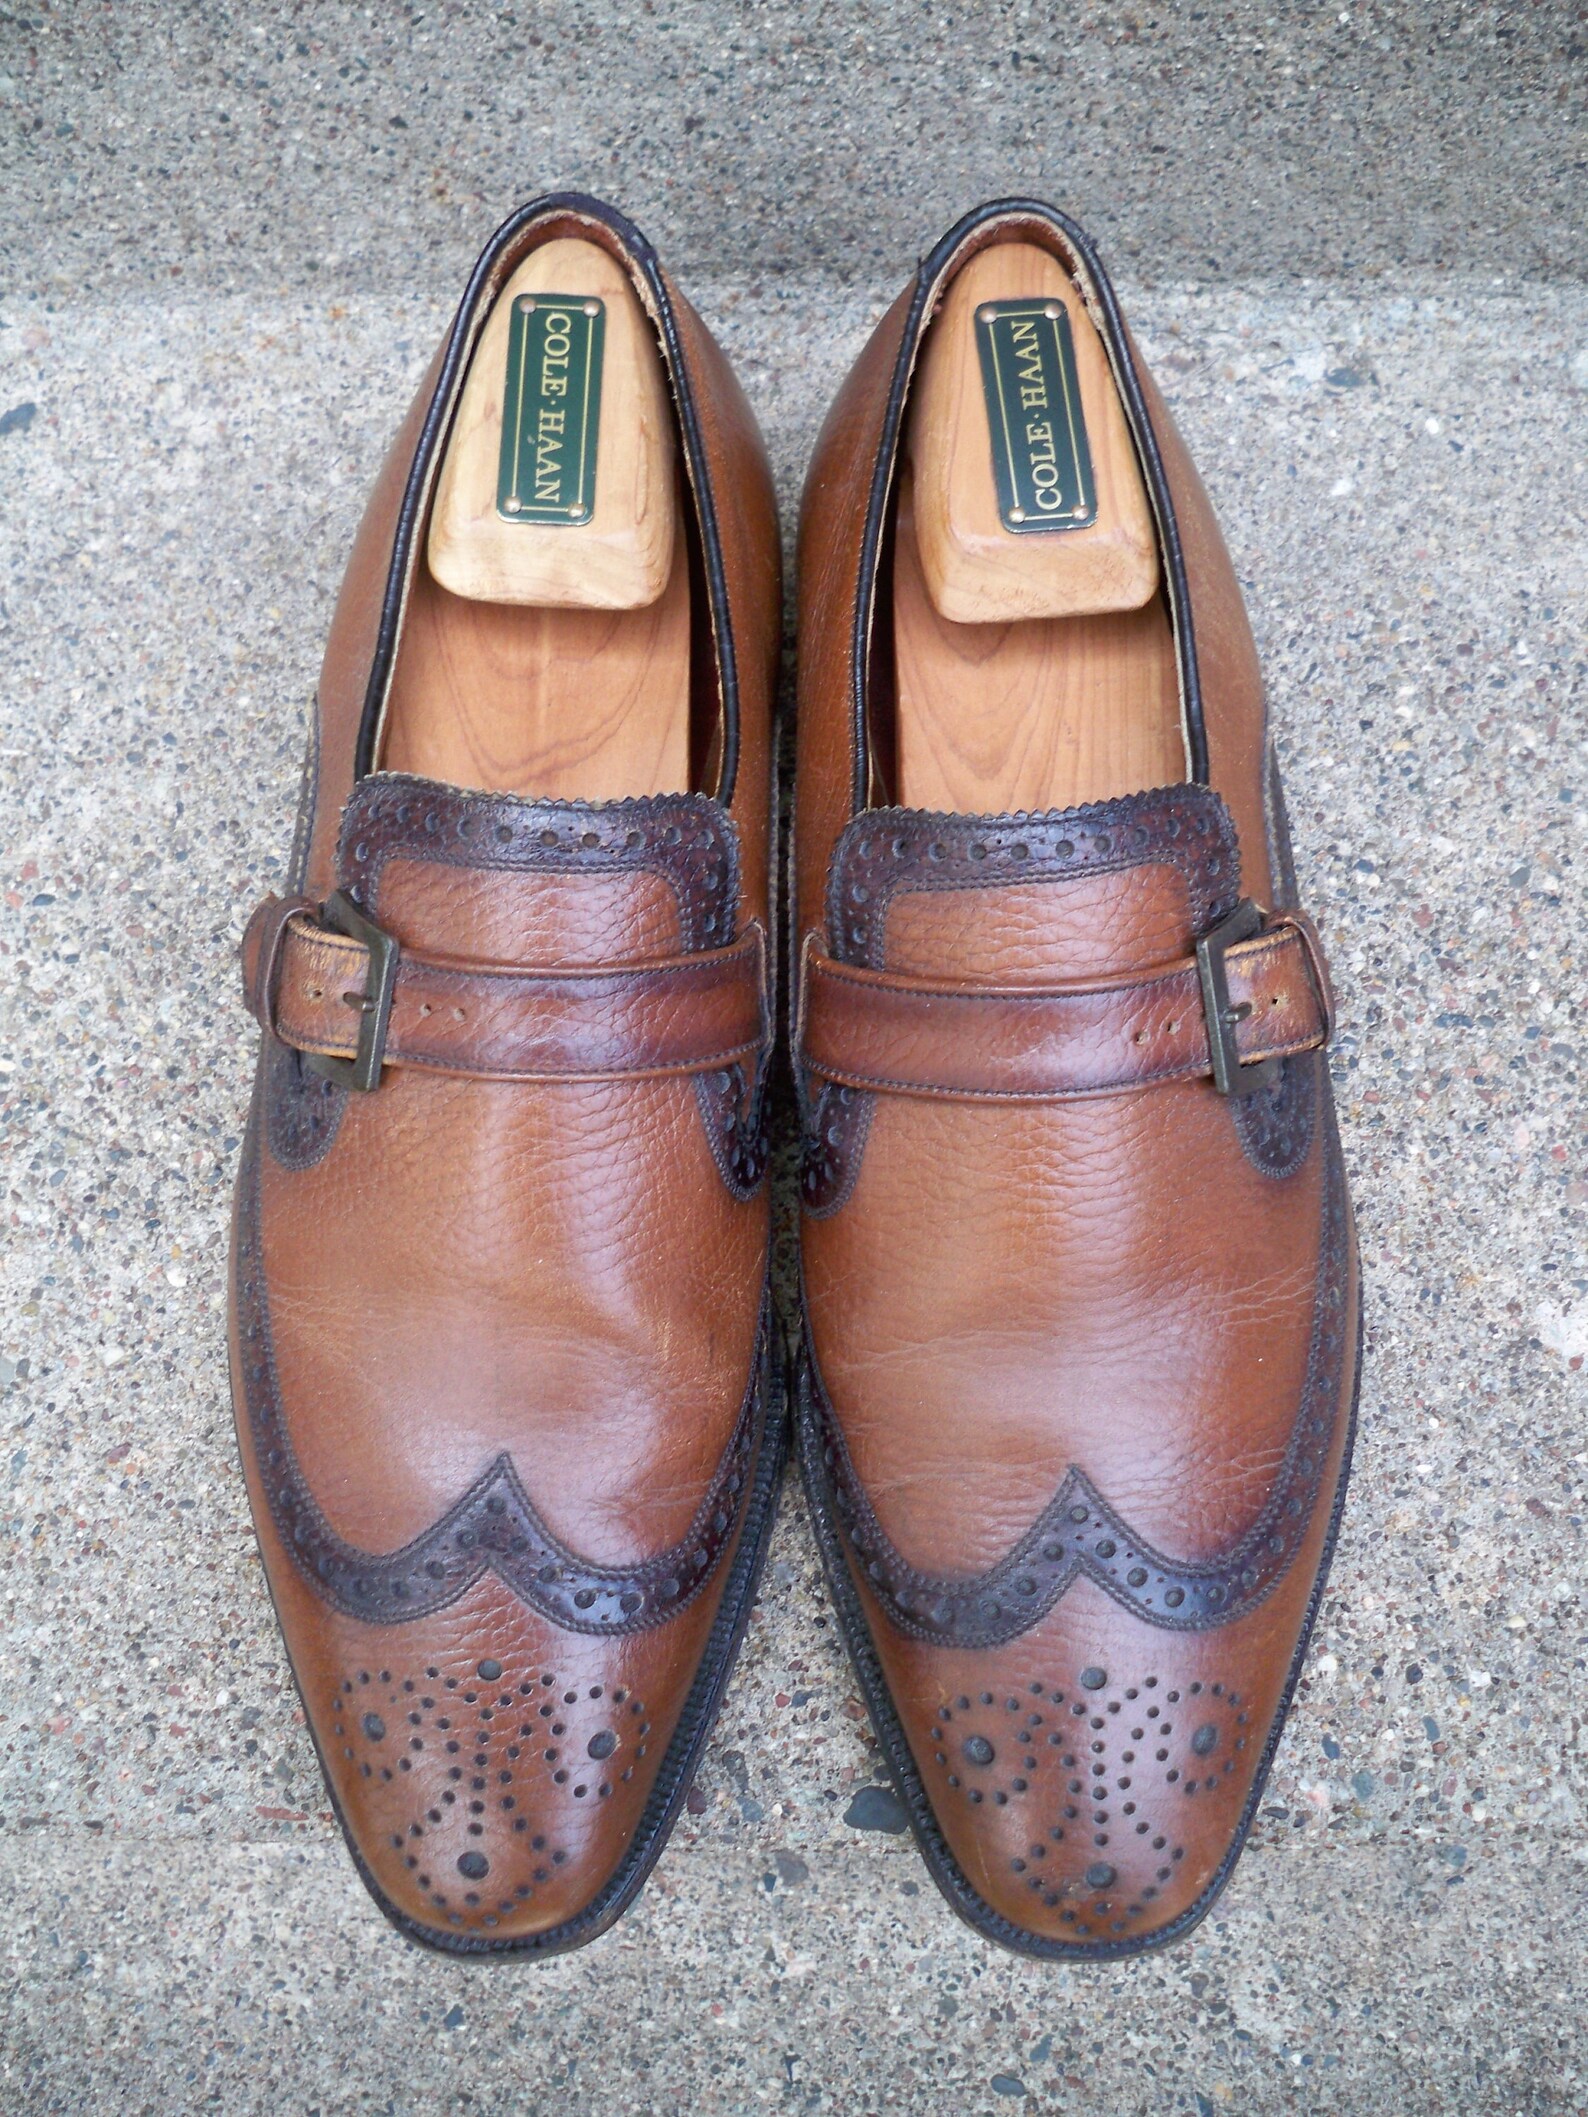 Vintage Freeman Shoes for Men Brown Leather Men's Wingtips Pimp ...